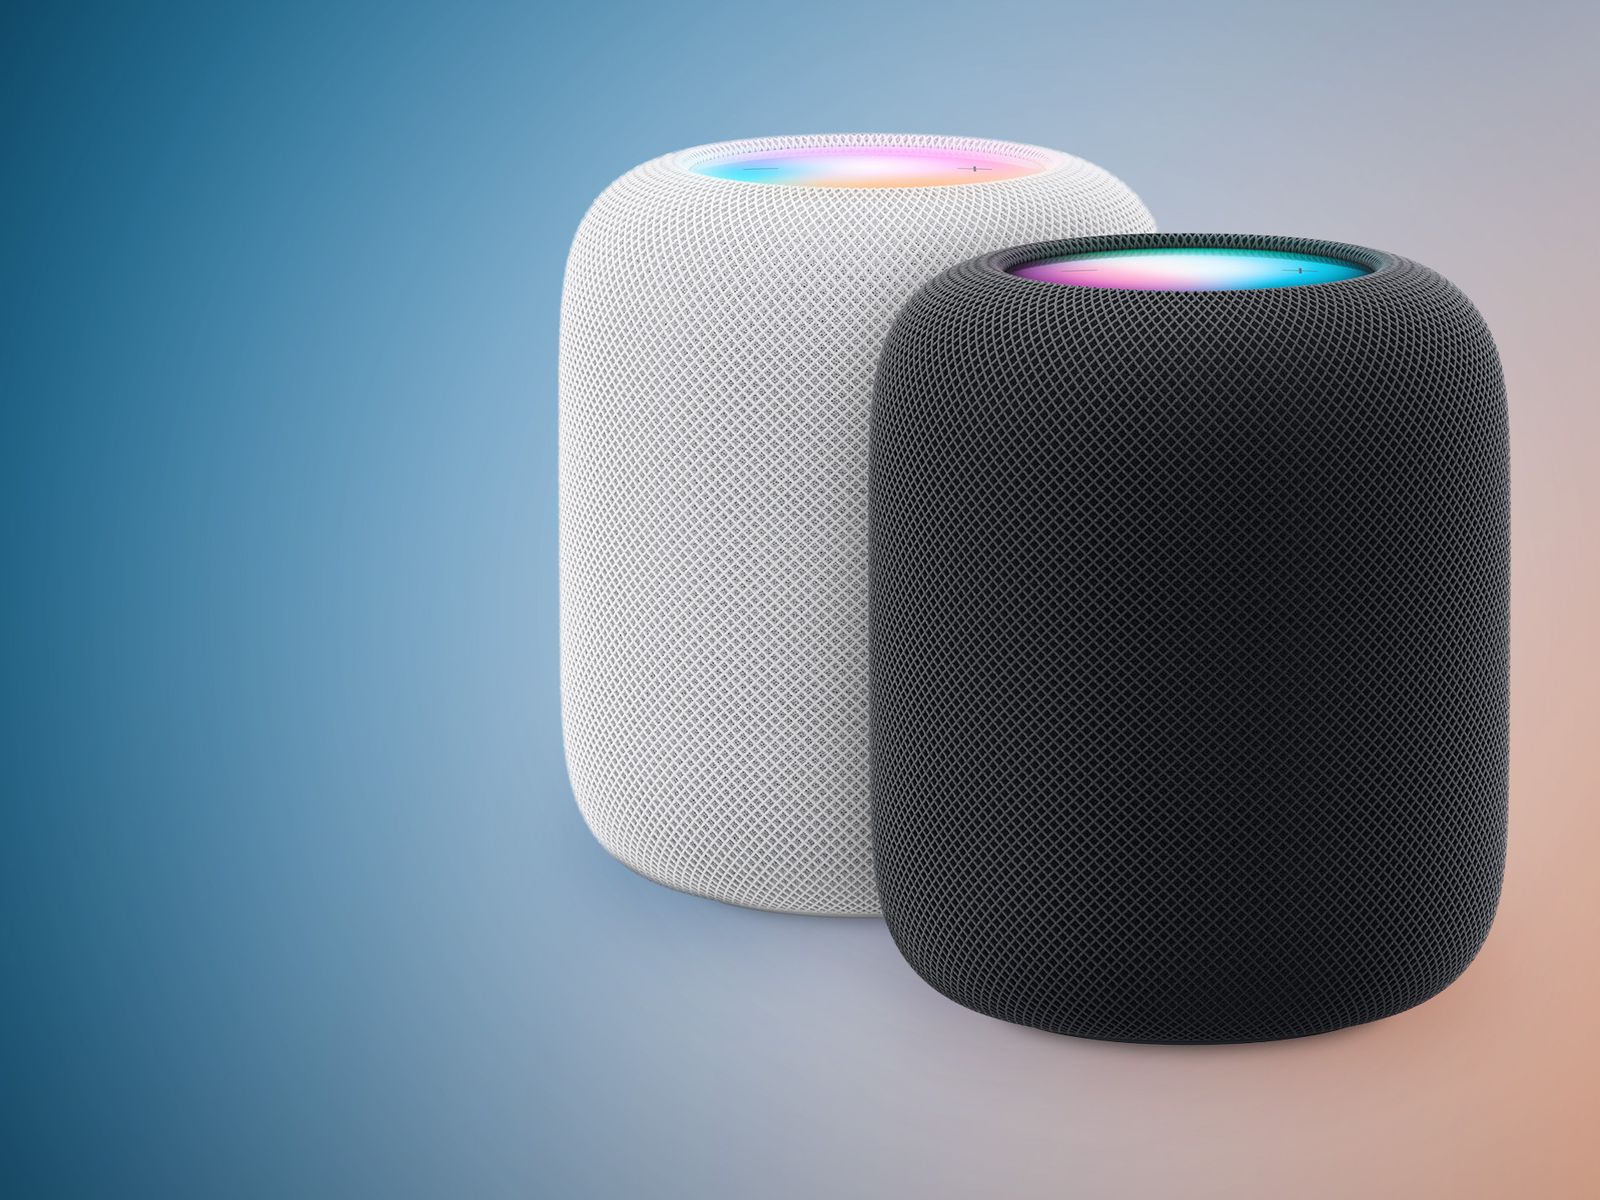 HomePod: Apple's Updated Full-Size Smart Speaker